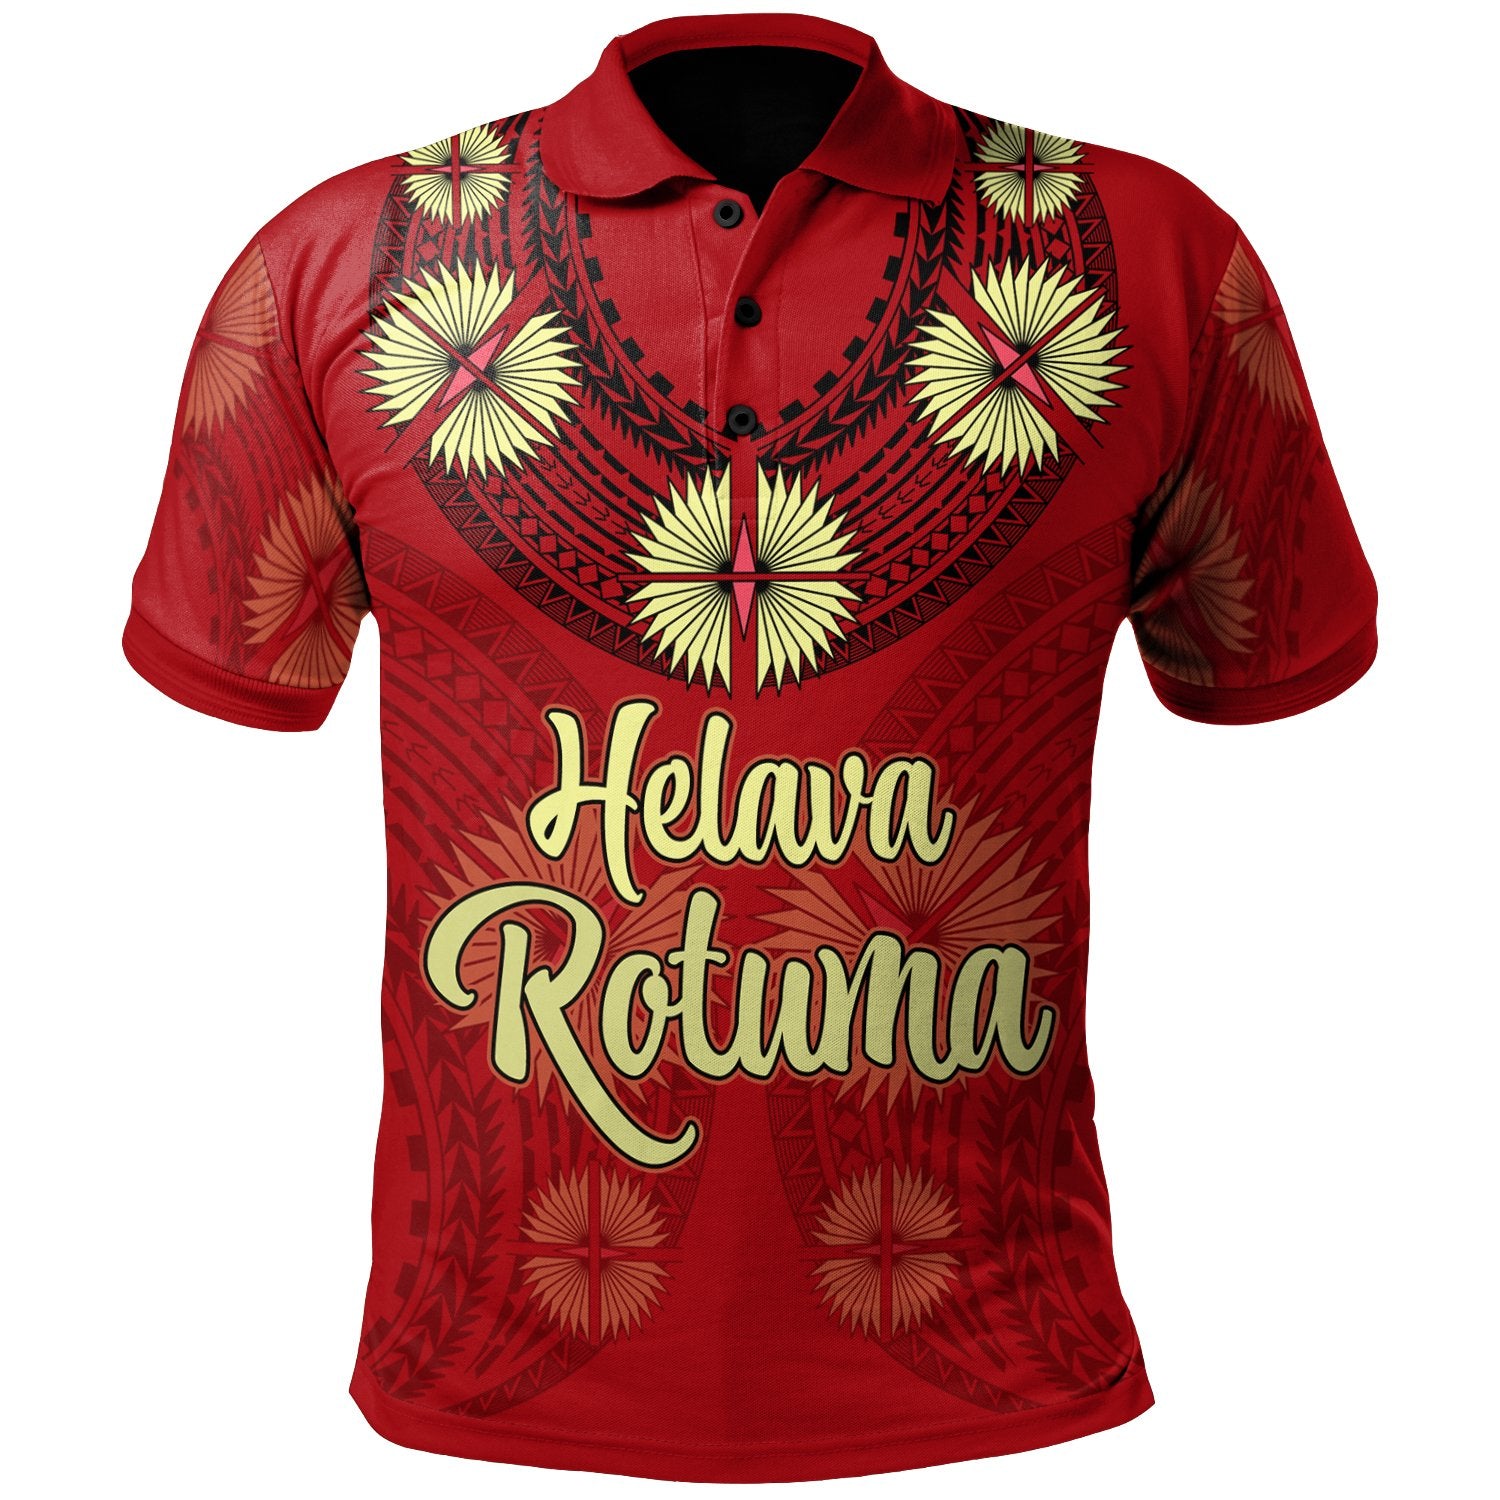 rotuma-polo-shirt-hevala-rotuma-tefui-flowers